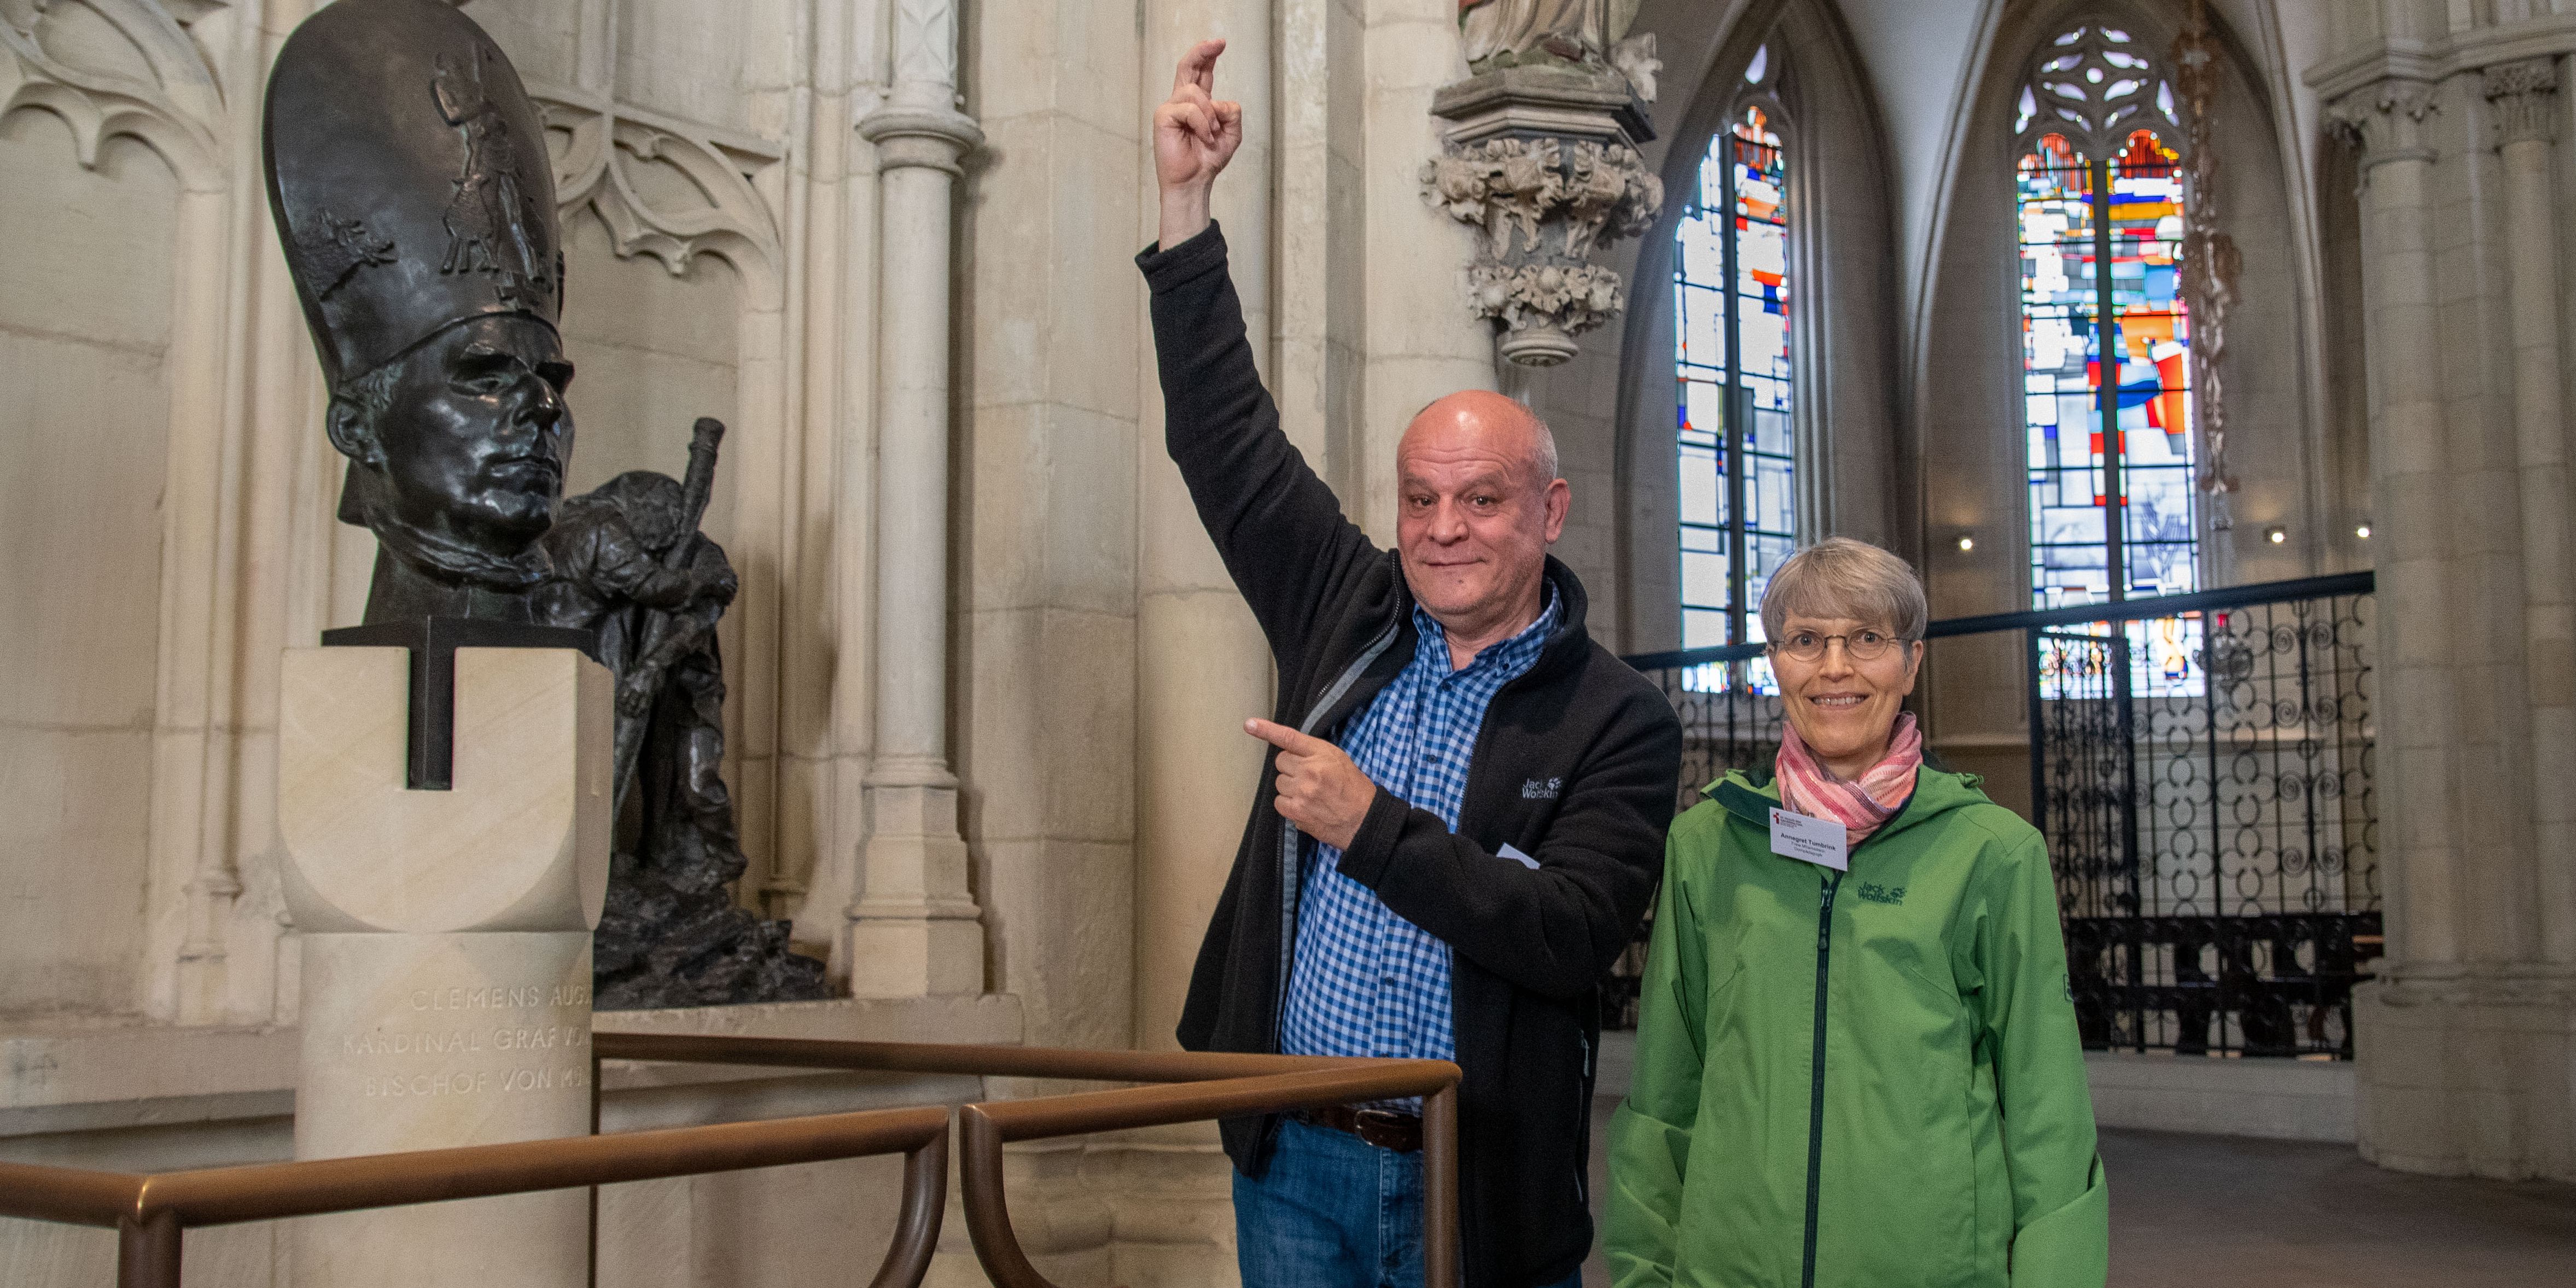 Annegret und Rudolf Tumbrink aus Münster sind gehörlos. Ab sofort wollen sie anderen Gehörlosen und hörgeschädigten Menschen auch den St.-Paulus-Dom näher bringen.